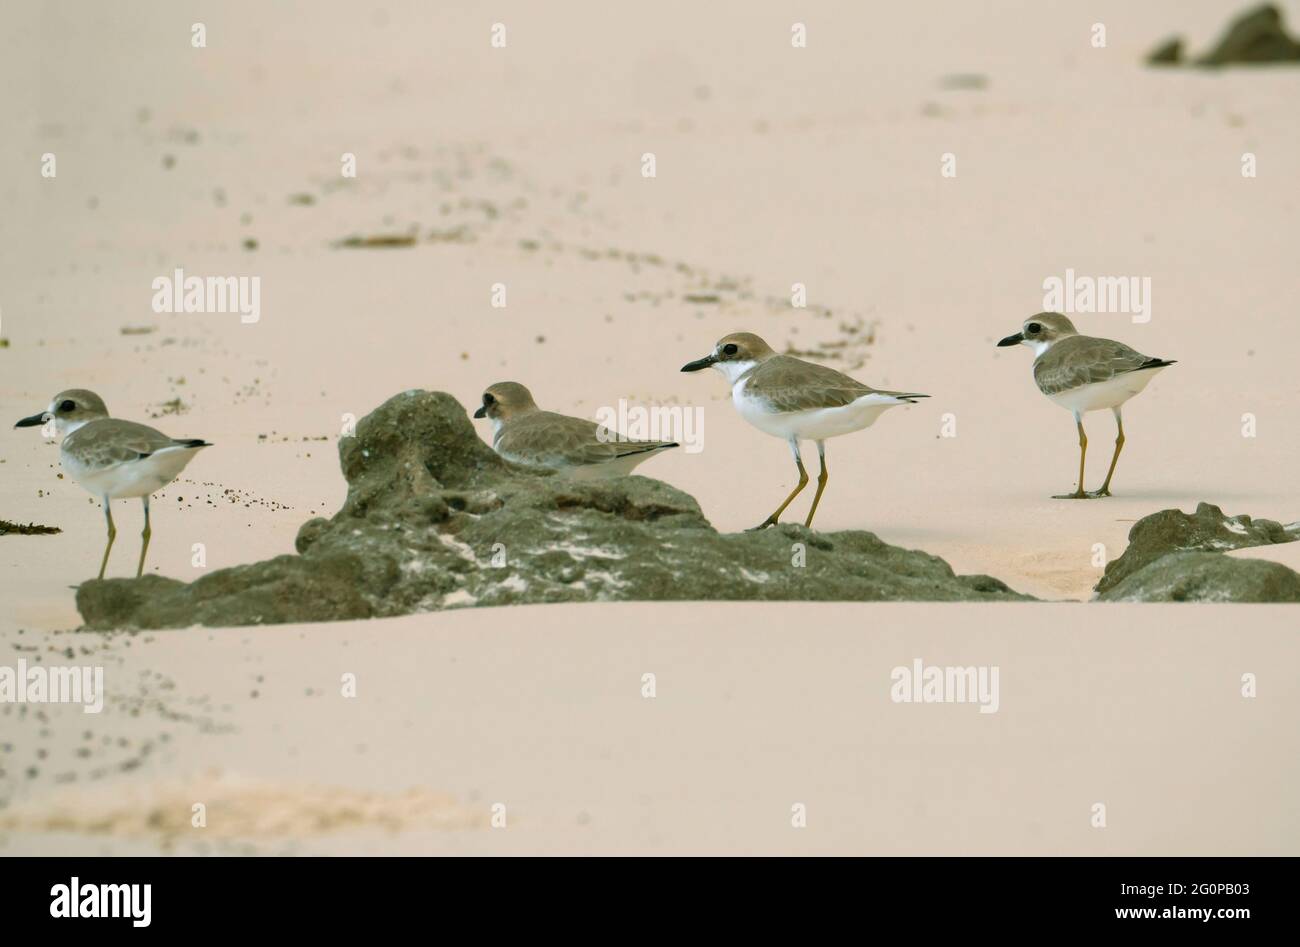 Grand trèfle de sable, Charadrius leschenaultii. Quatre pluviers se tenant sur une plage sur la côte de Kimberly Australie occidentale. Banque D'Images